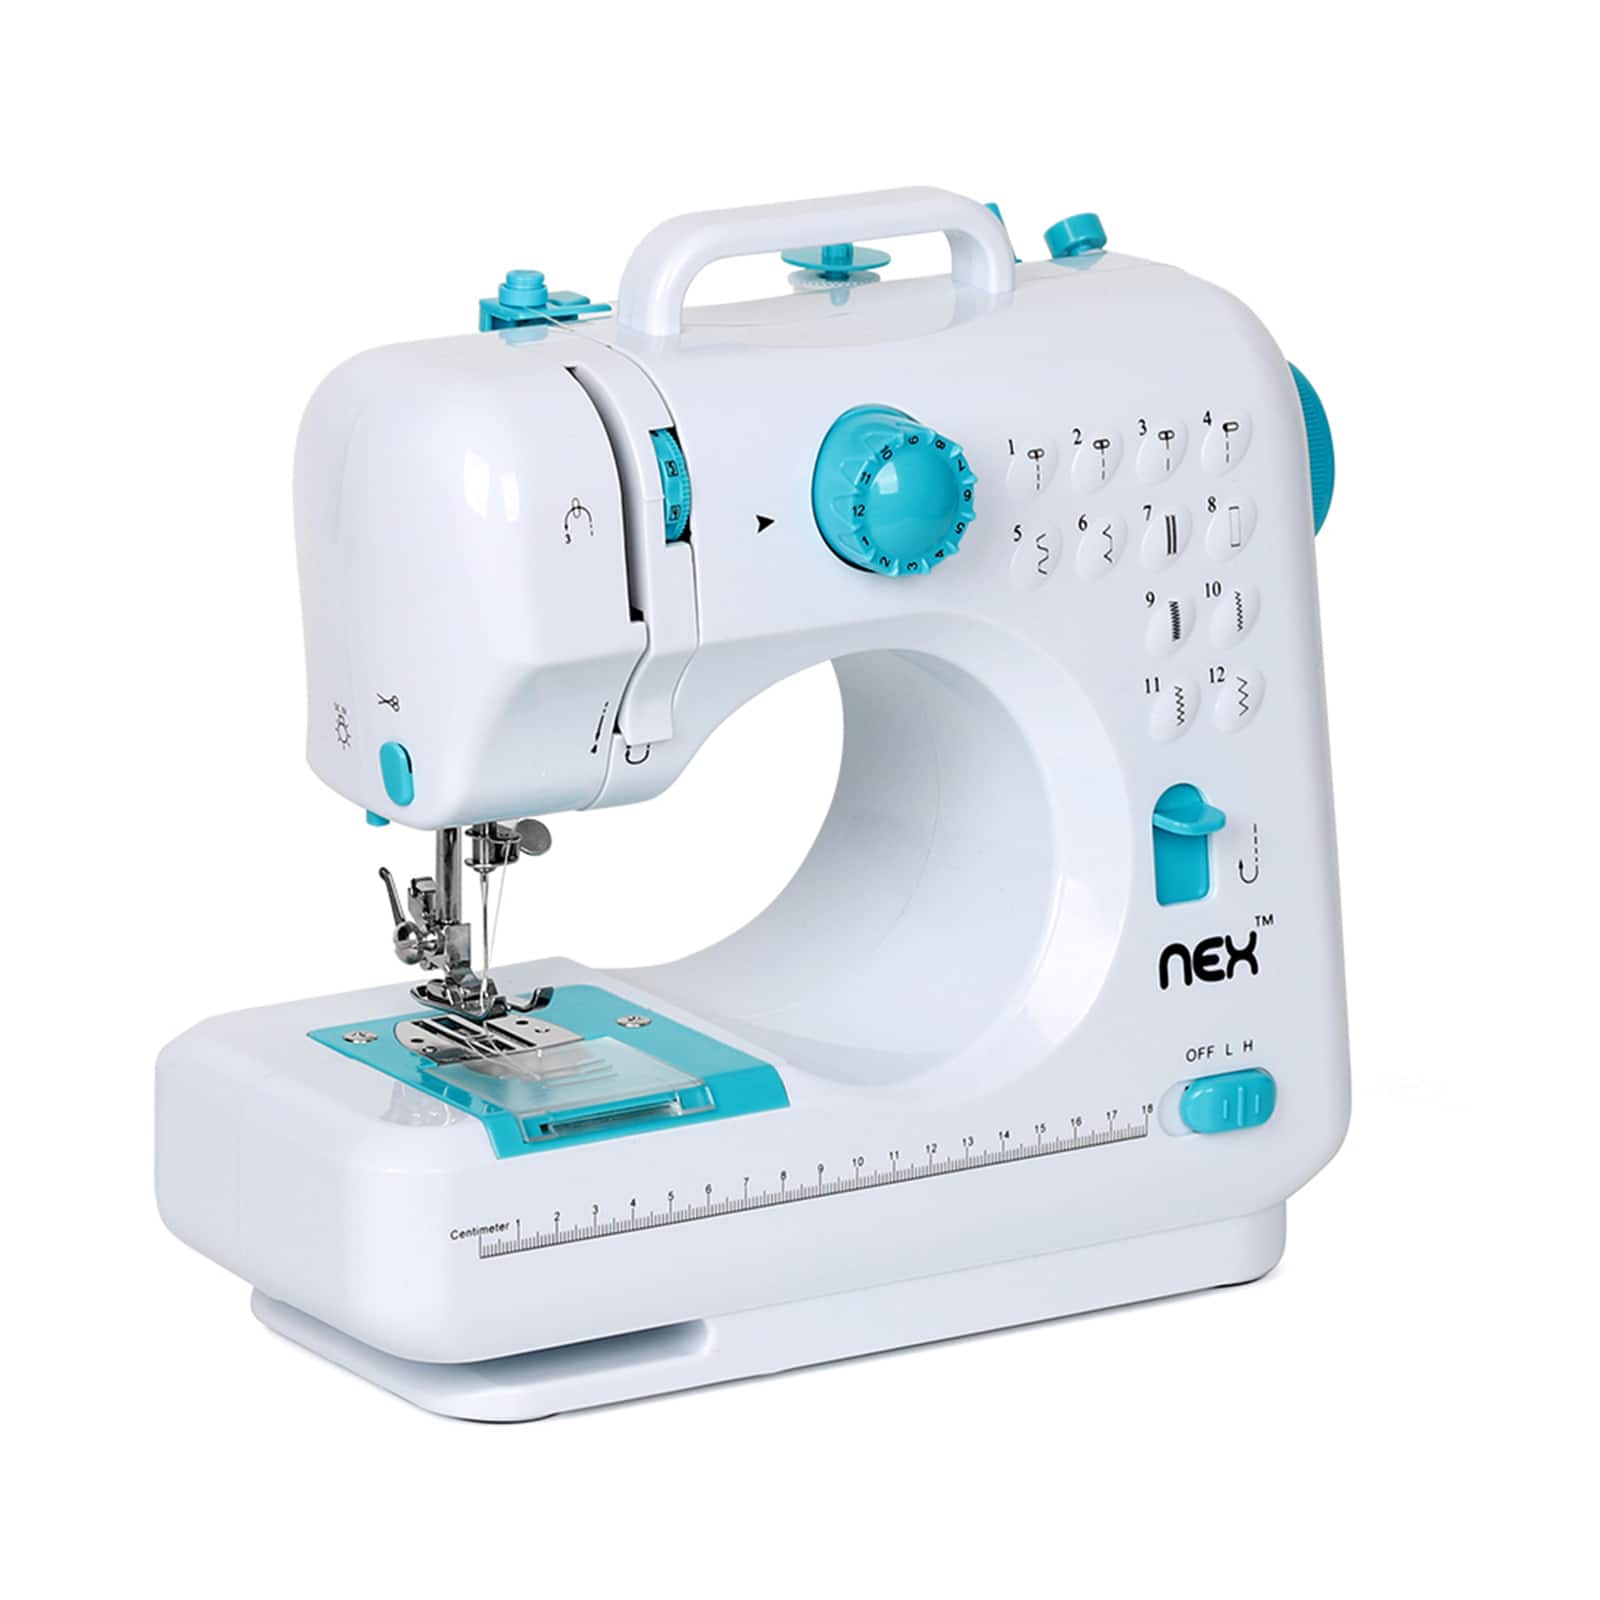 NEX™ Indigo Blue Modern Crafting Sewing Machine with 12 Built-In Stitches - 1